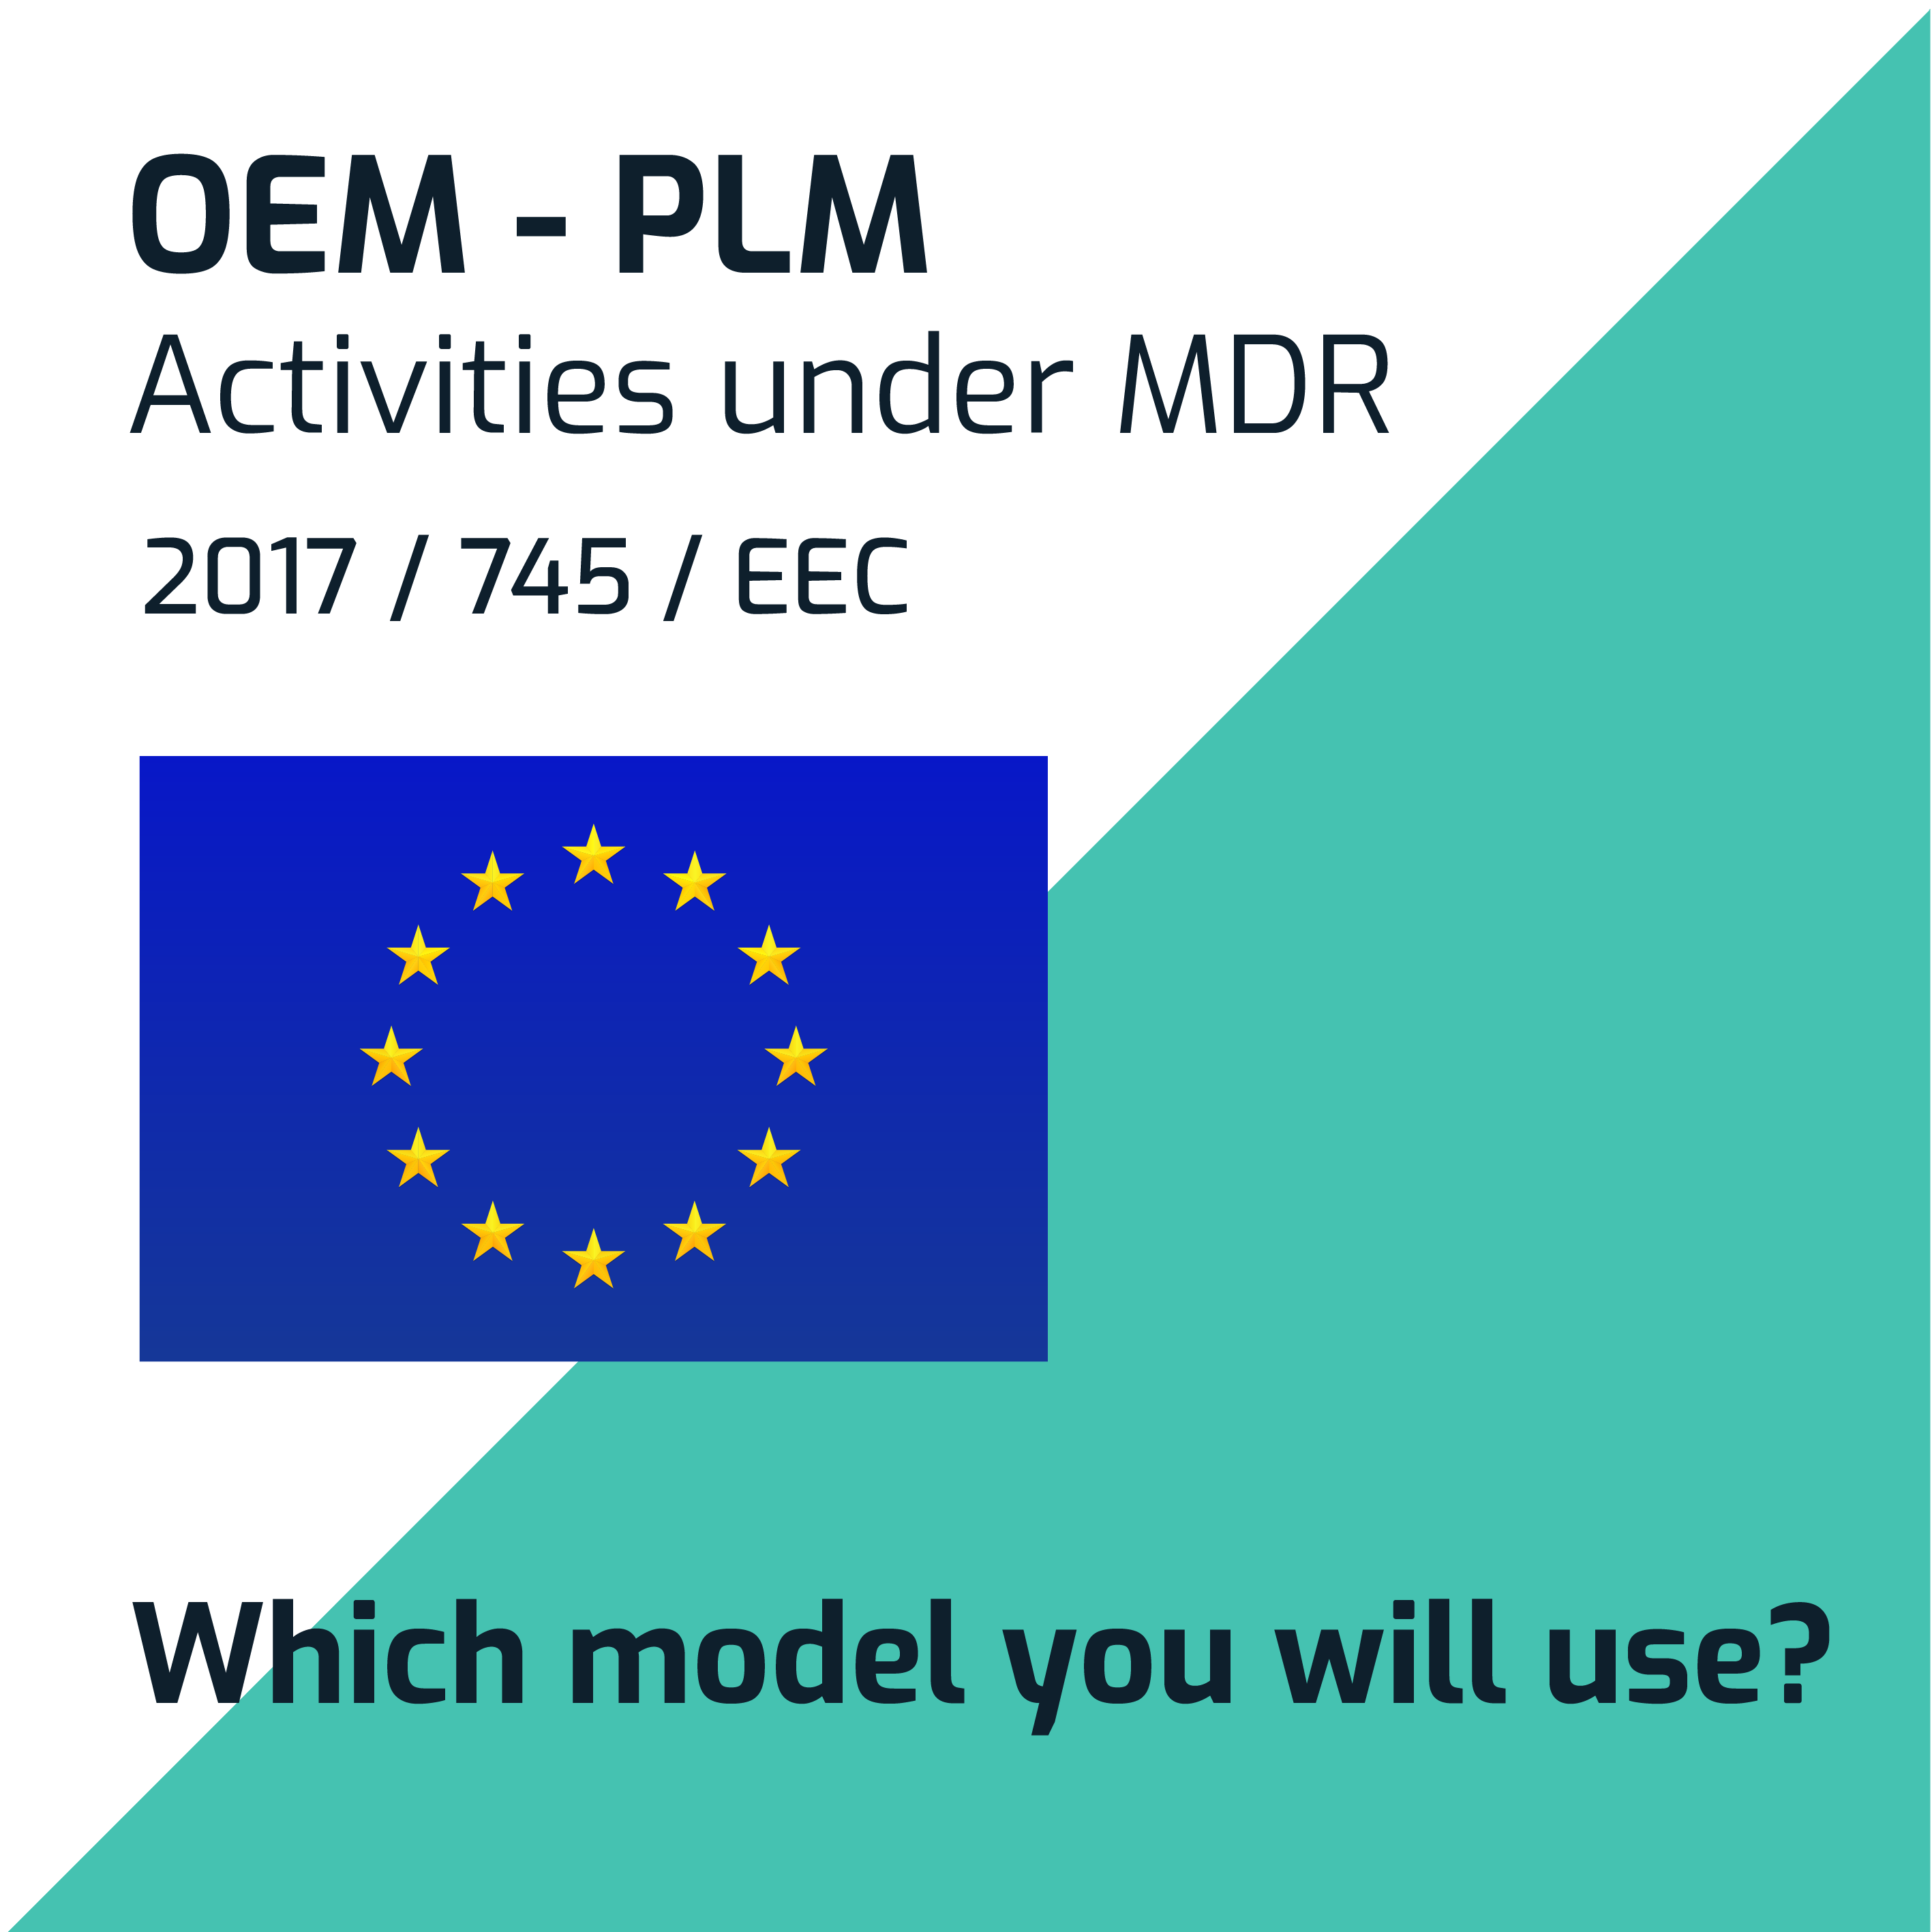 OEM - PLM under MDR